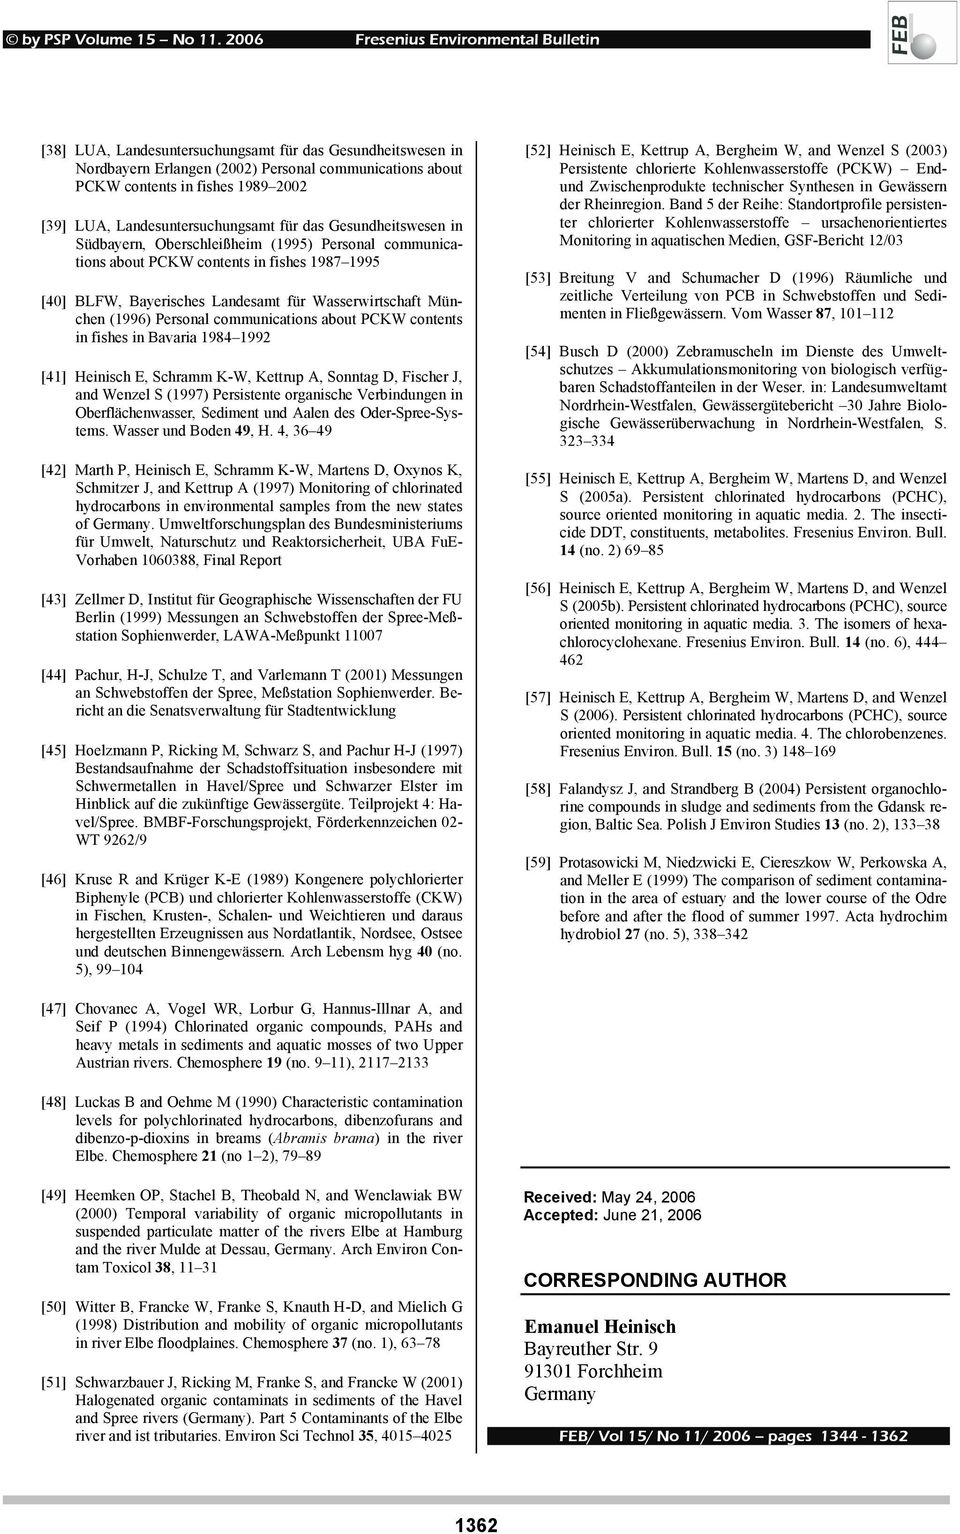 communications about PCKW contents in fishes in Bavaria 1984 1992 [41] Heinisch E, Schramm K-W, Kettrup A, Sonntag D, Fischer J, and Wenzel S (1997) Persistente organische Verbindungen in